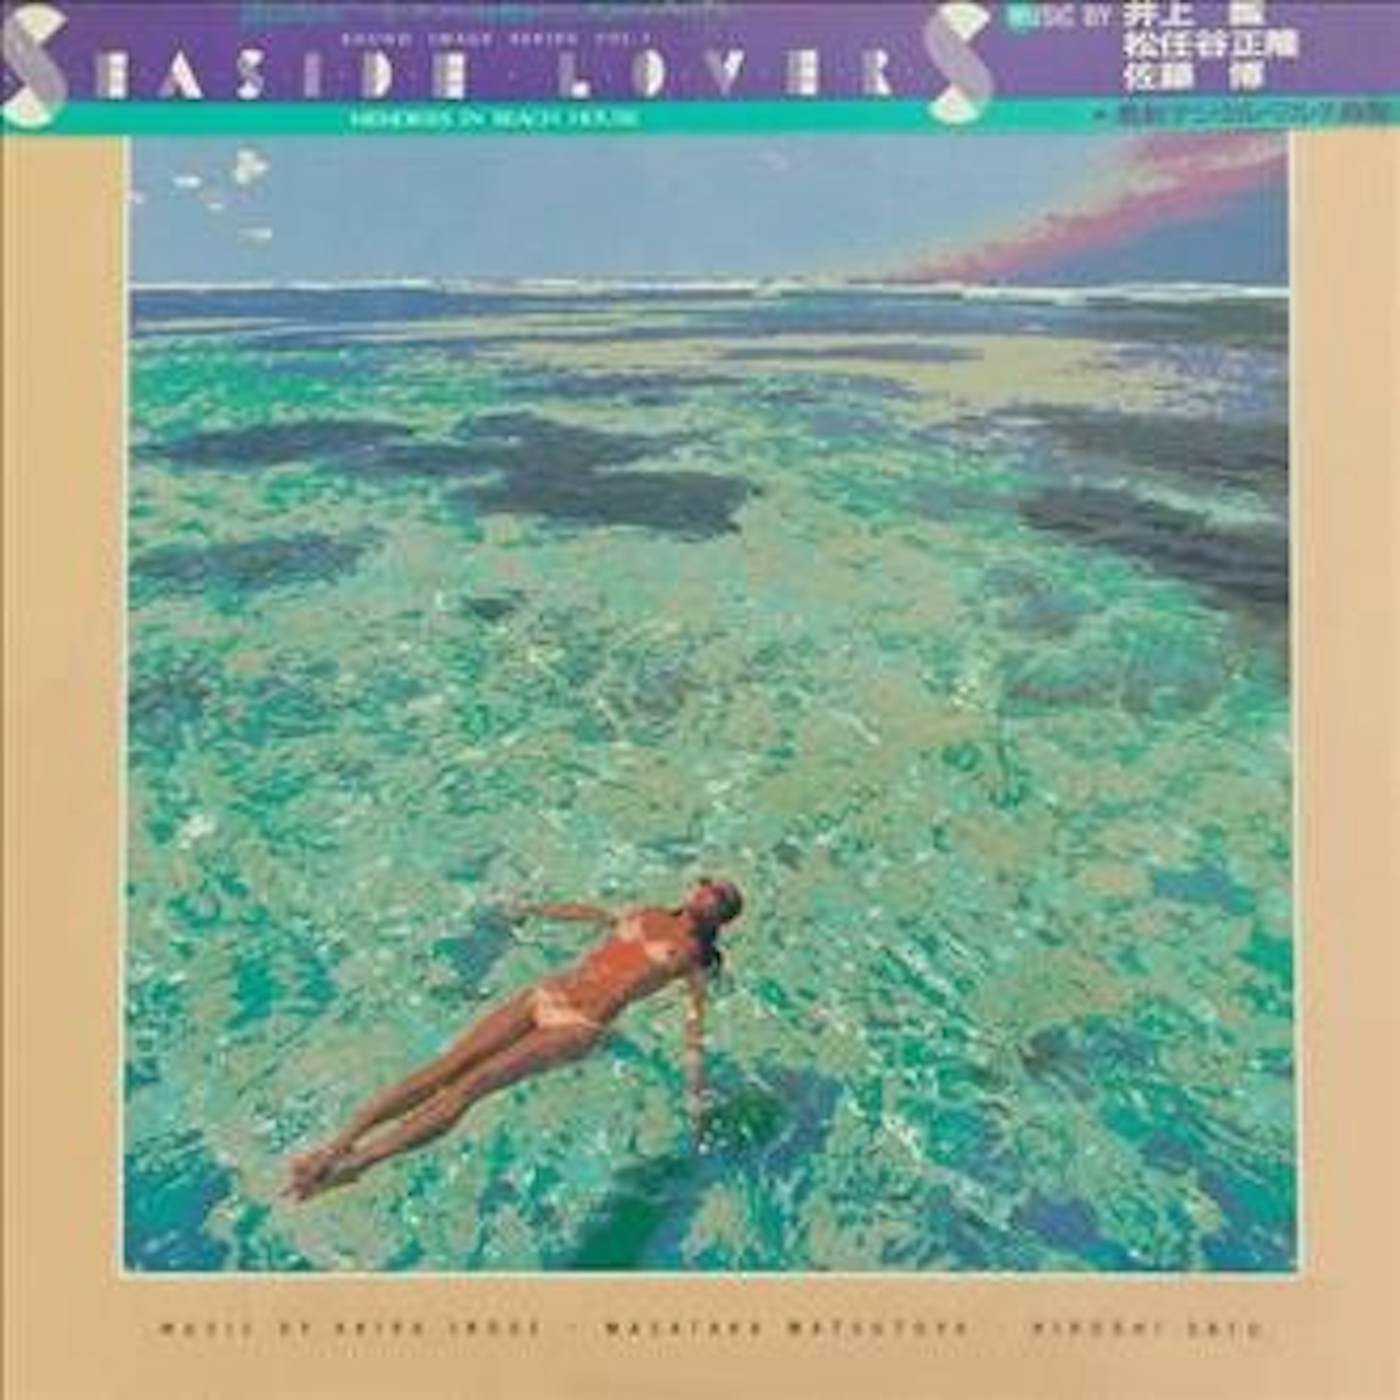 Seaside Lovers Memories In Beach House Vinyl Record